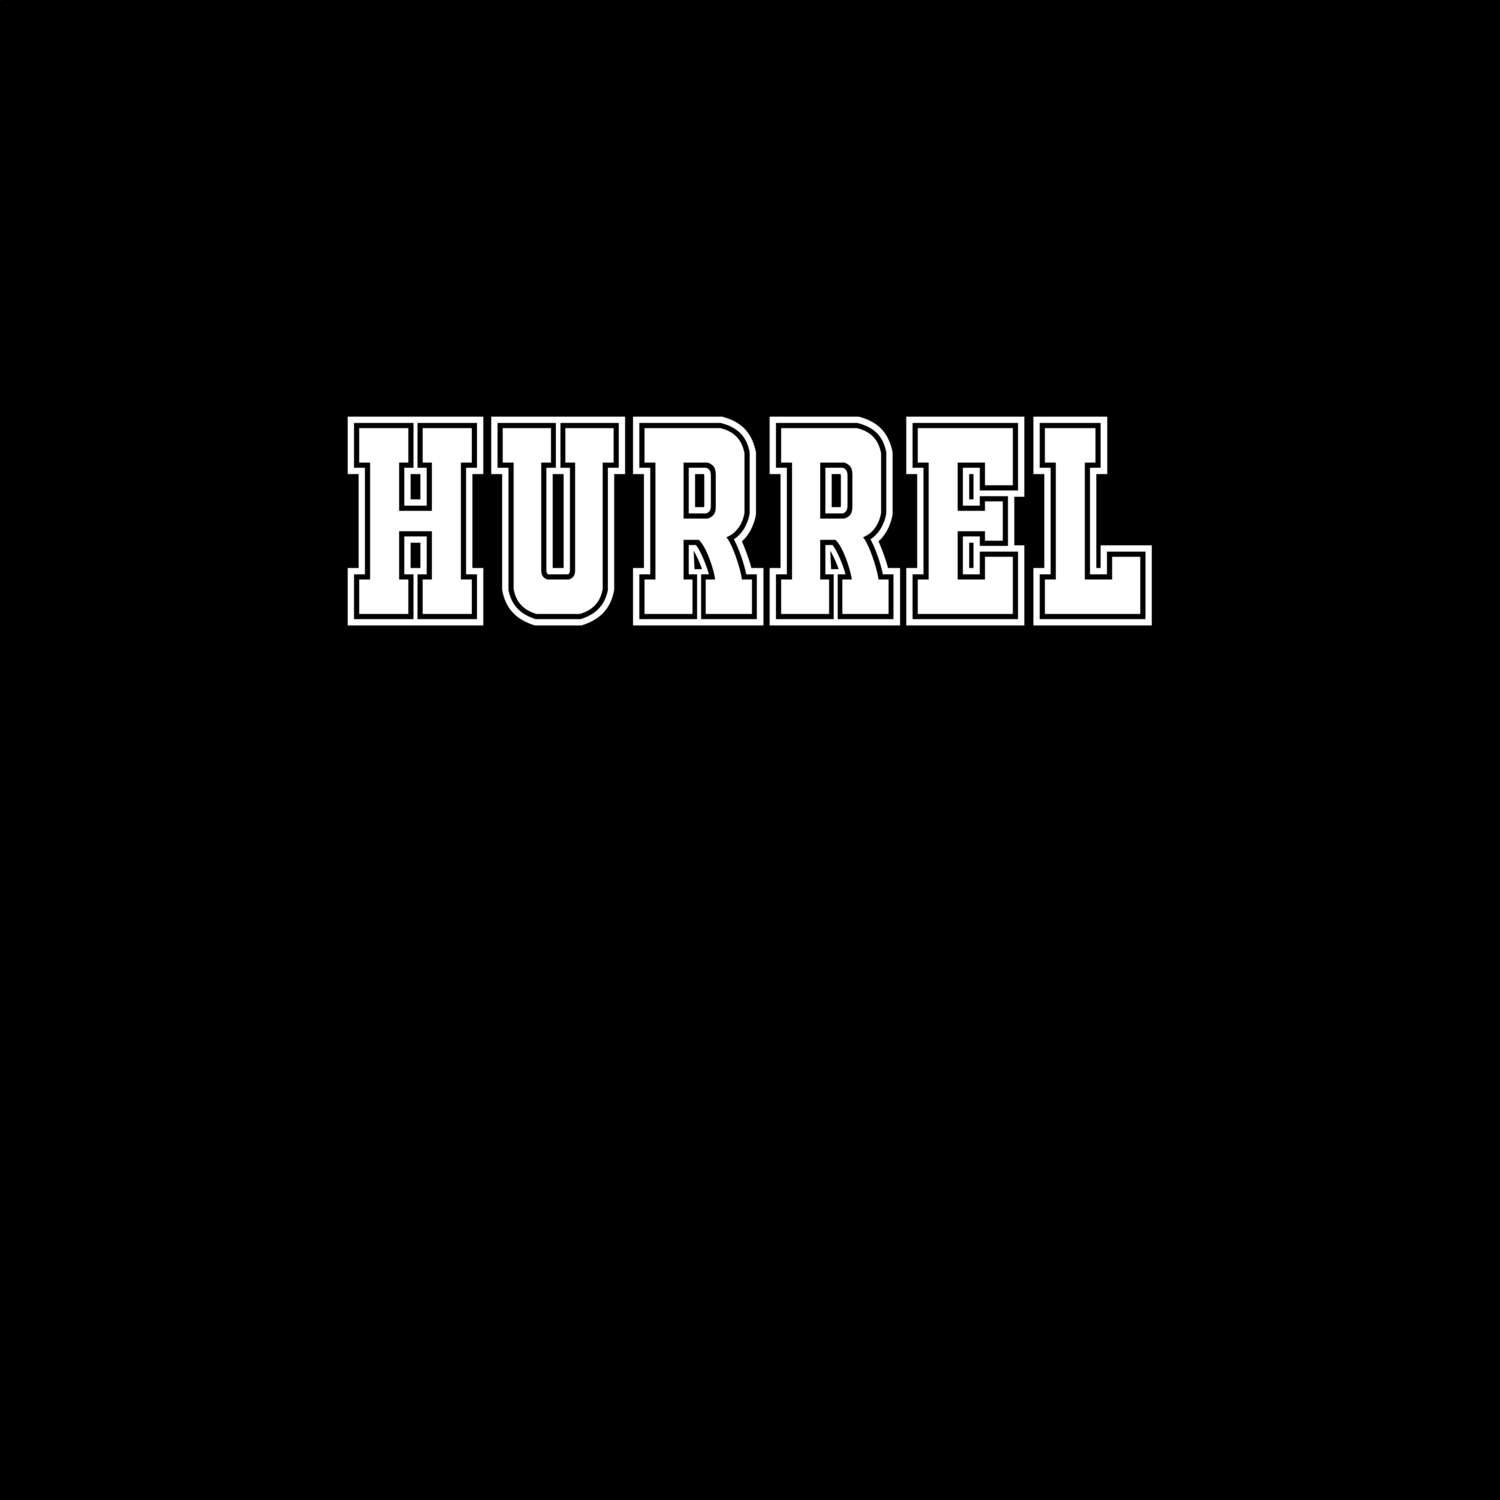 Hurrel T-Shirt »Classic«